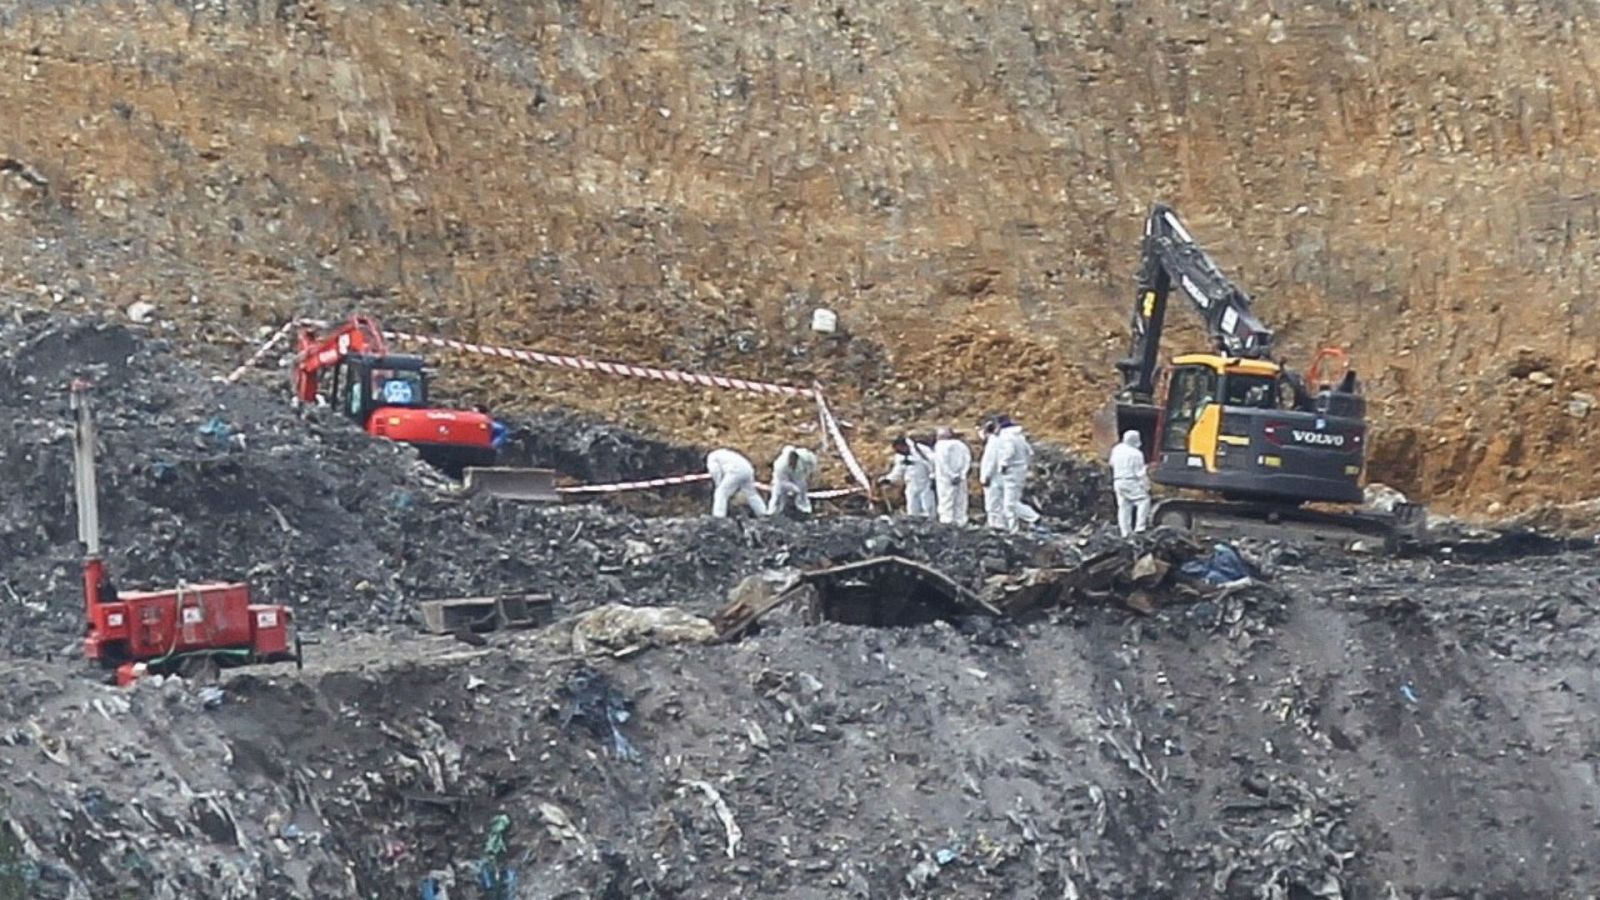 14 horas - Los restos óseos encontrados en el vertedero de Zaldibar pertenecen a Alberto Sololuze - Escuchar ahora